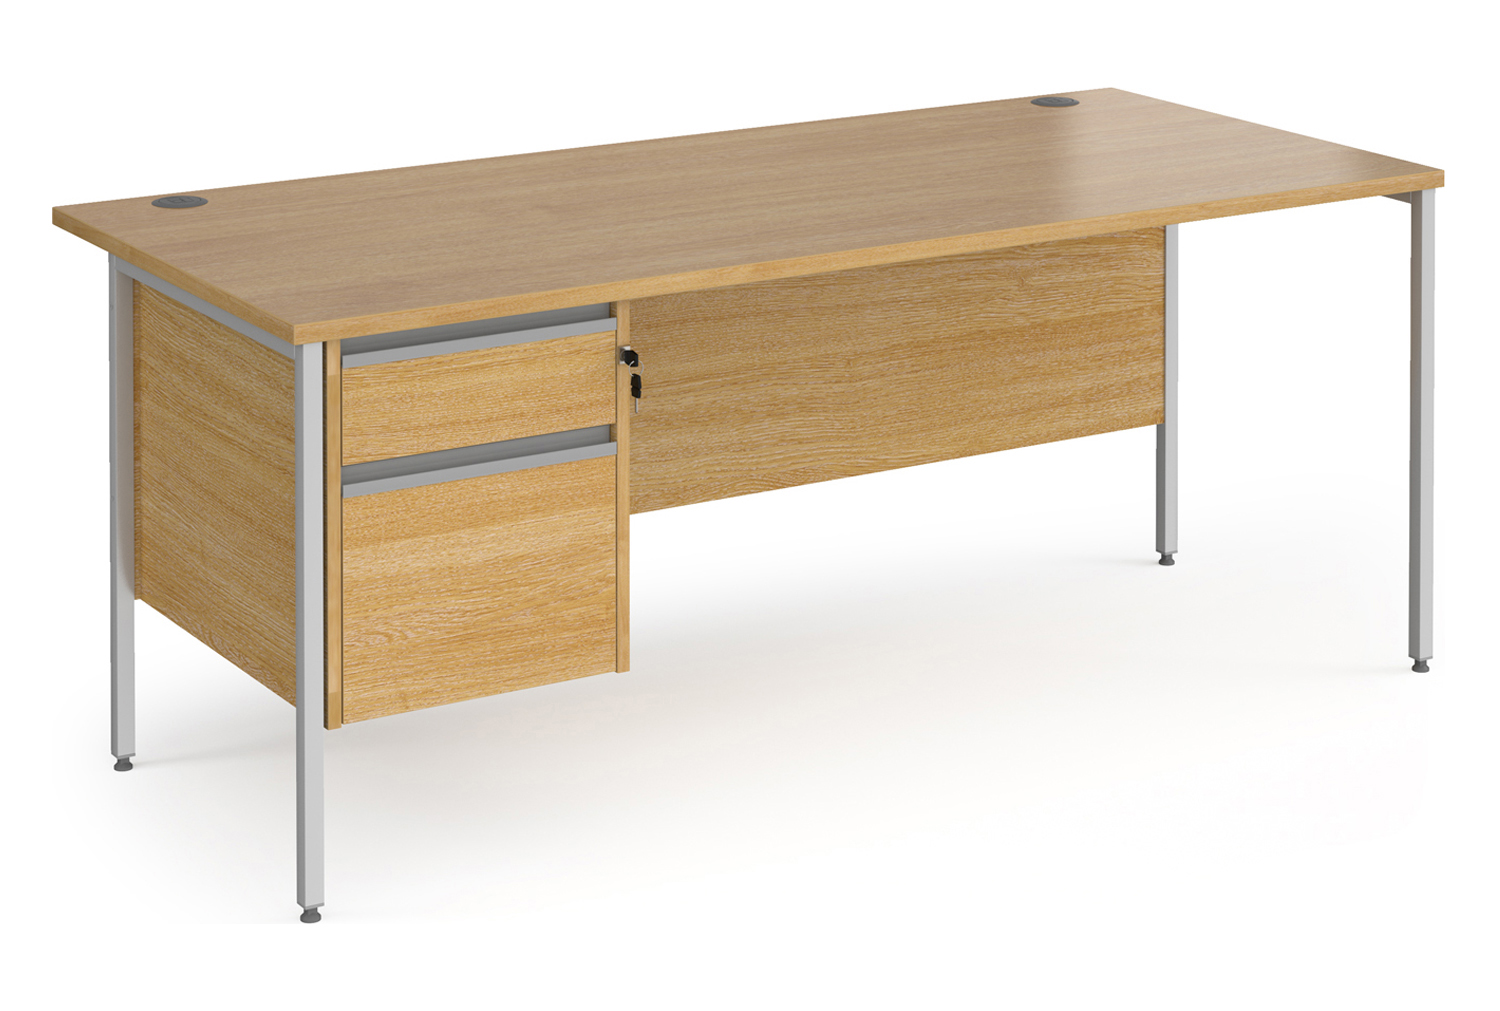 Value Line Classic+ Rectangular H-Leg Office Desk 2 Drawers (Silver Leg), 180wx80dx73h (cm), Oak, Fully Installed